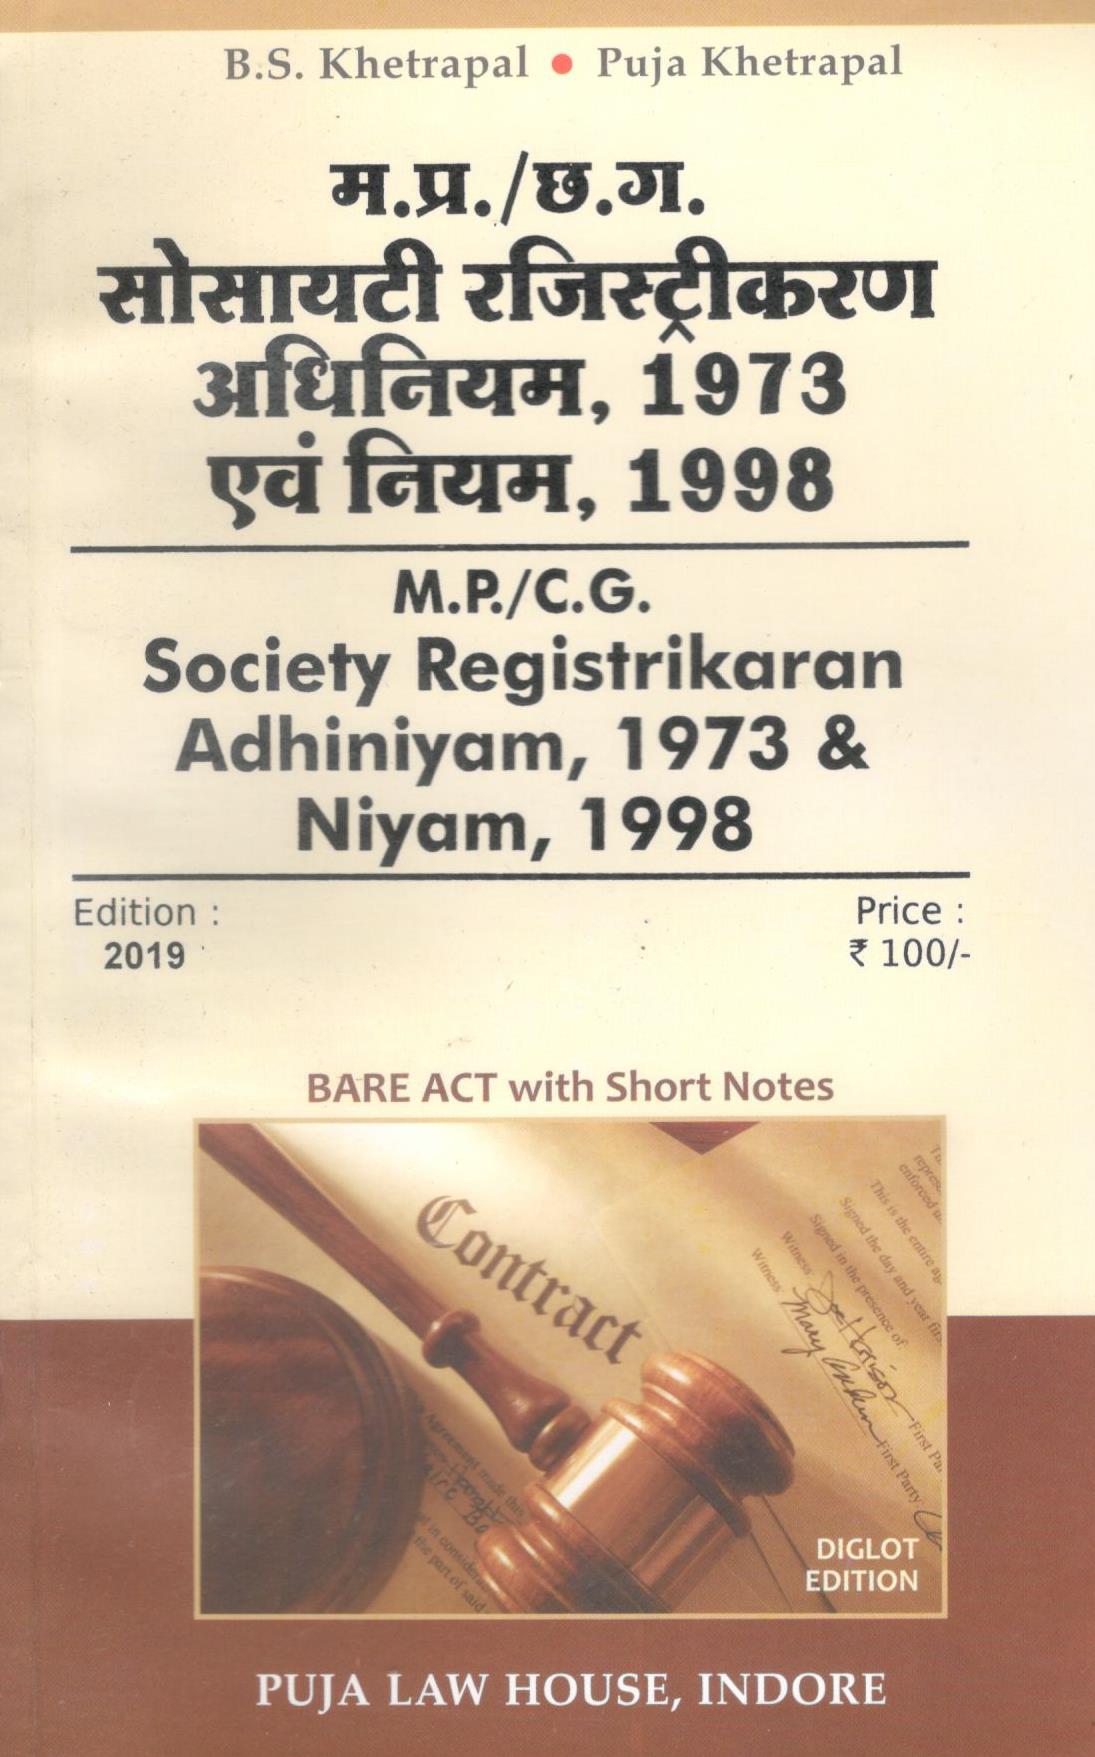  Buy मध्य प्रदेश सोसायटी रजिस्ट्रीकरण अधिनियम, 1973 एवं नियम, 1998 / Madhya Pradesh Society Registrikaran Act, 1973 and Rules, 1998